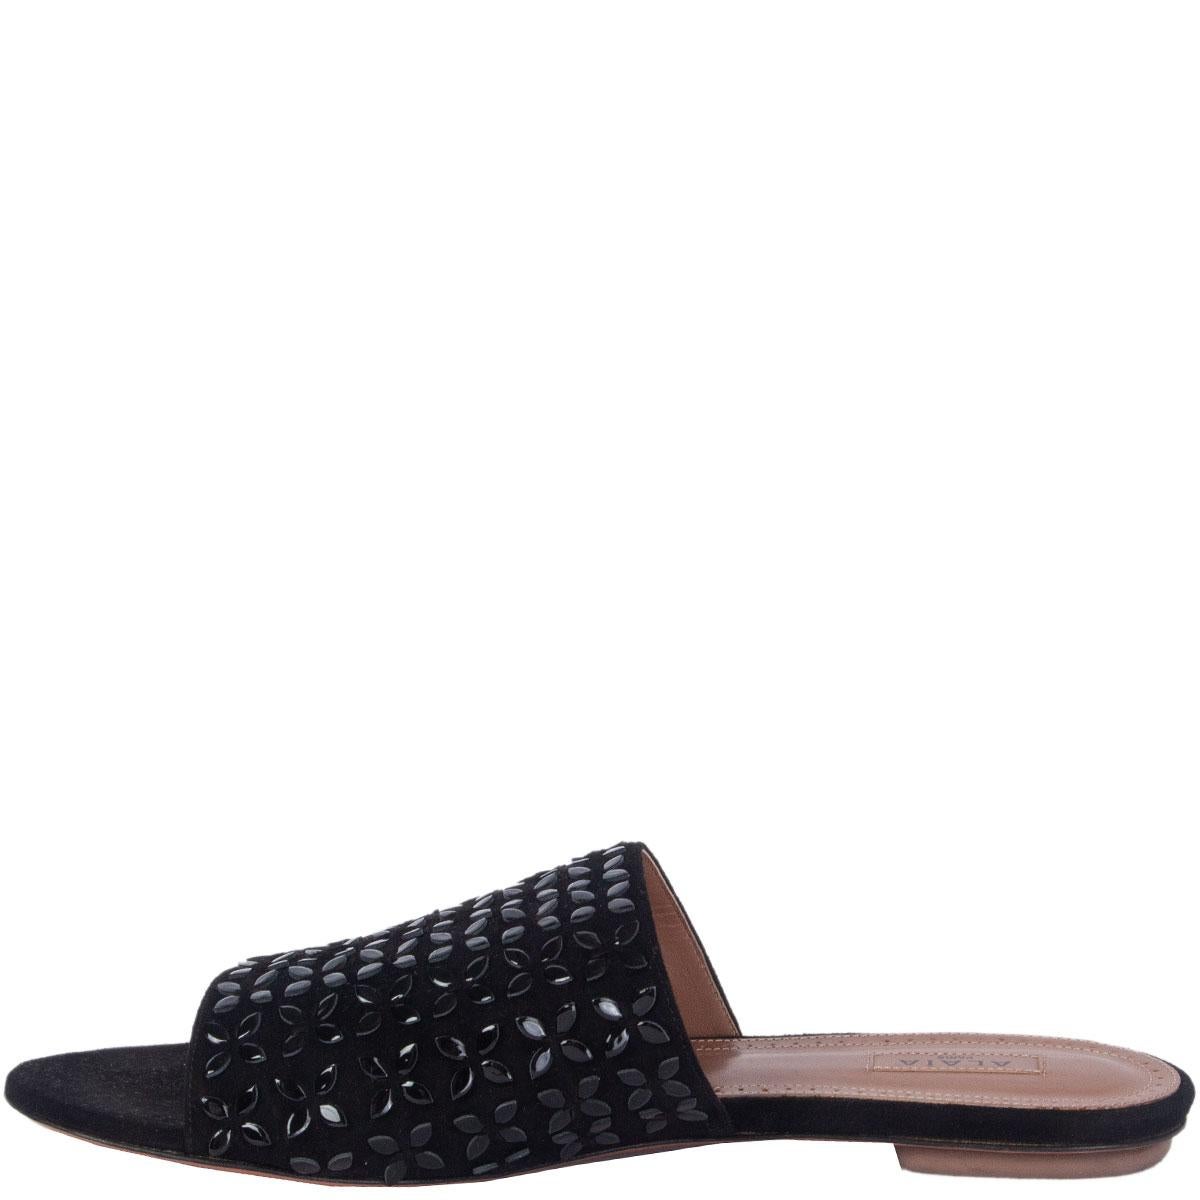 Black ALAIA black suede & LEATHER EMBELLISHED SLIDES Sandals Shoes 38 For Sale